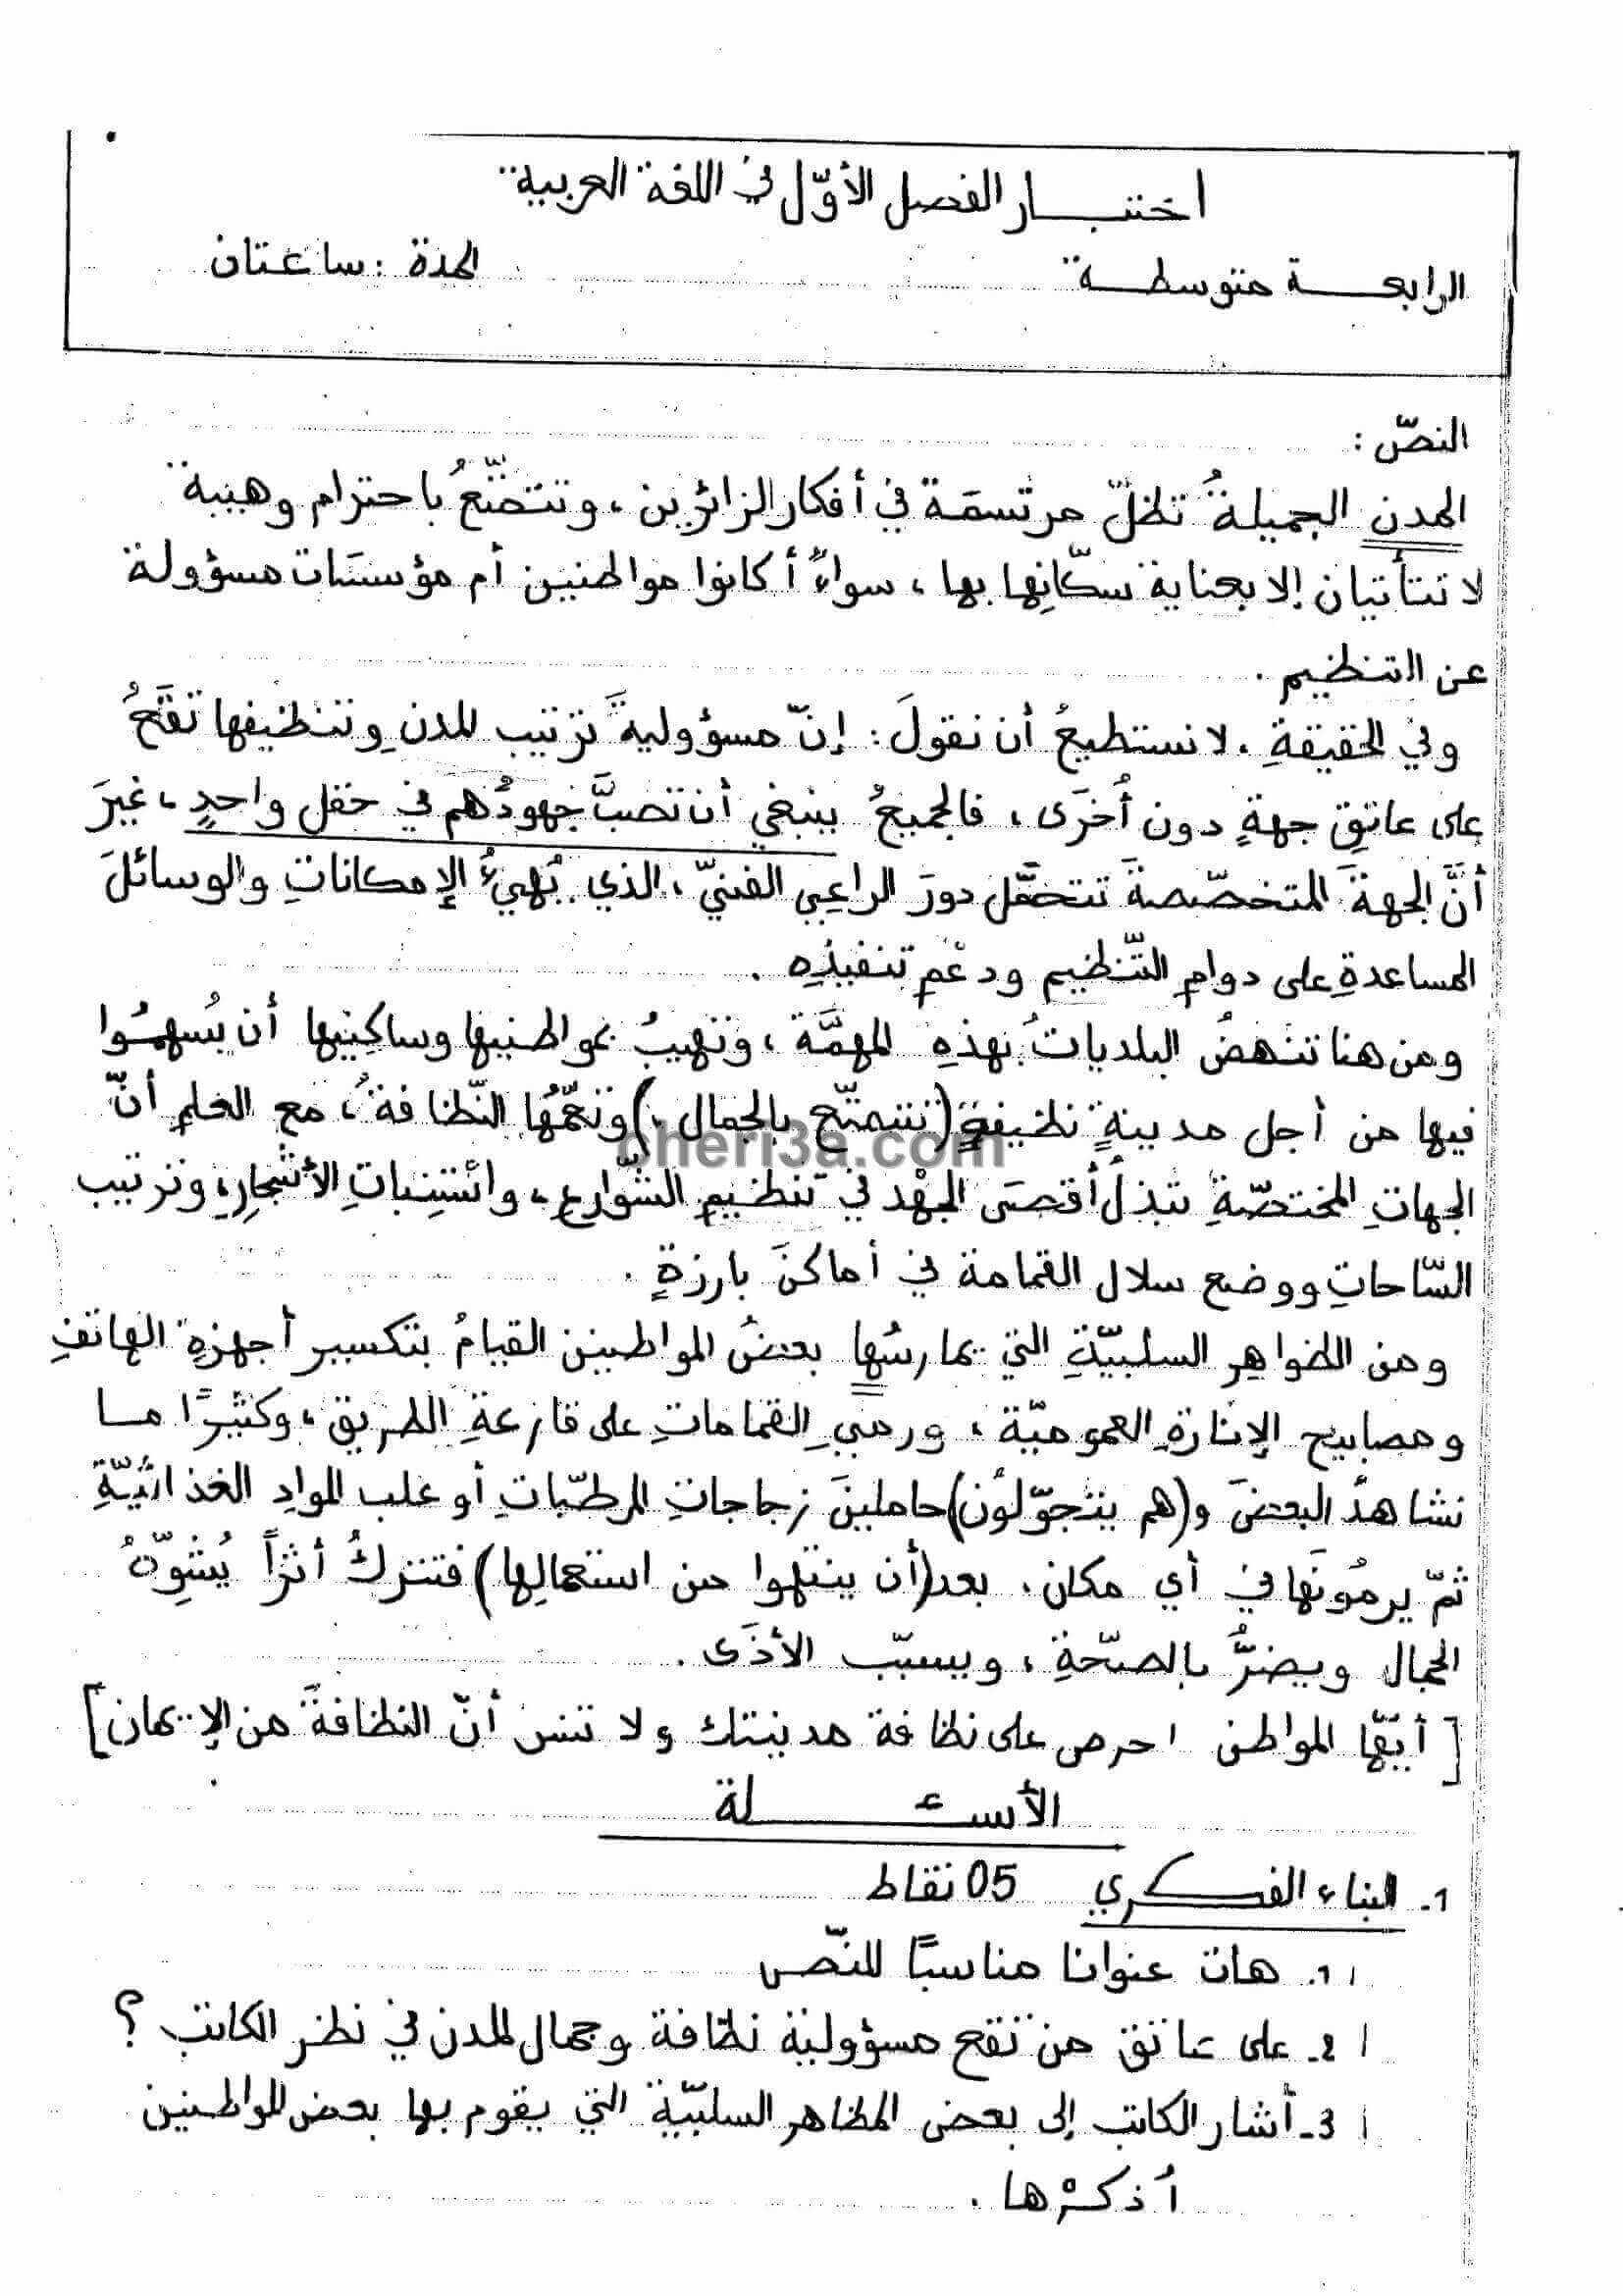 اختبار الفصل الاول للسنة الرابعة متوسط في اللغة العربية النموذج 3